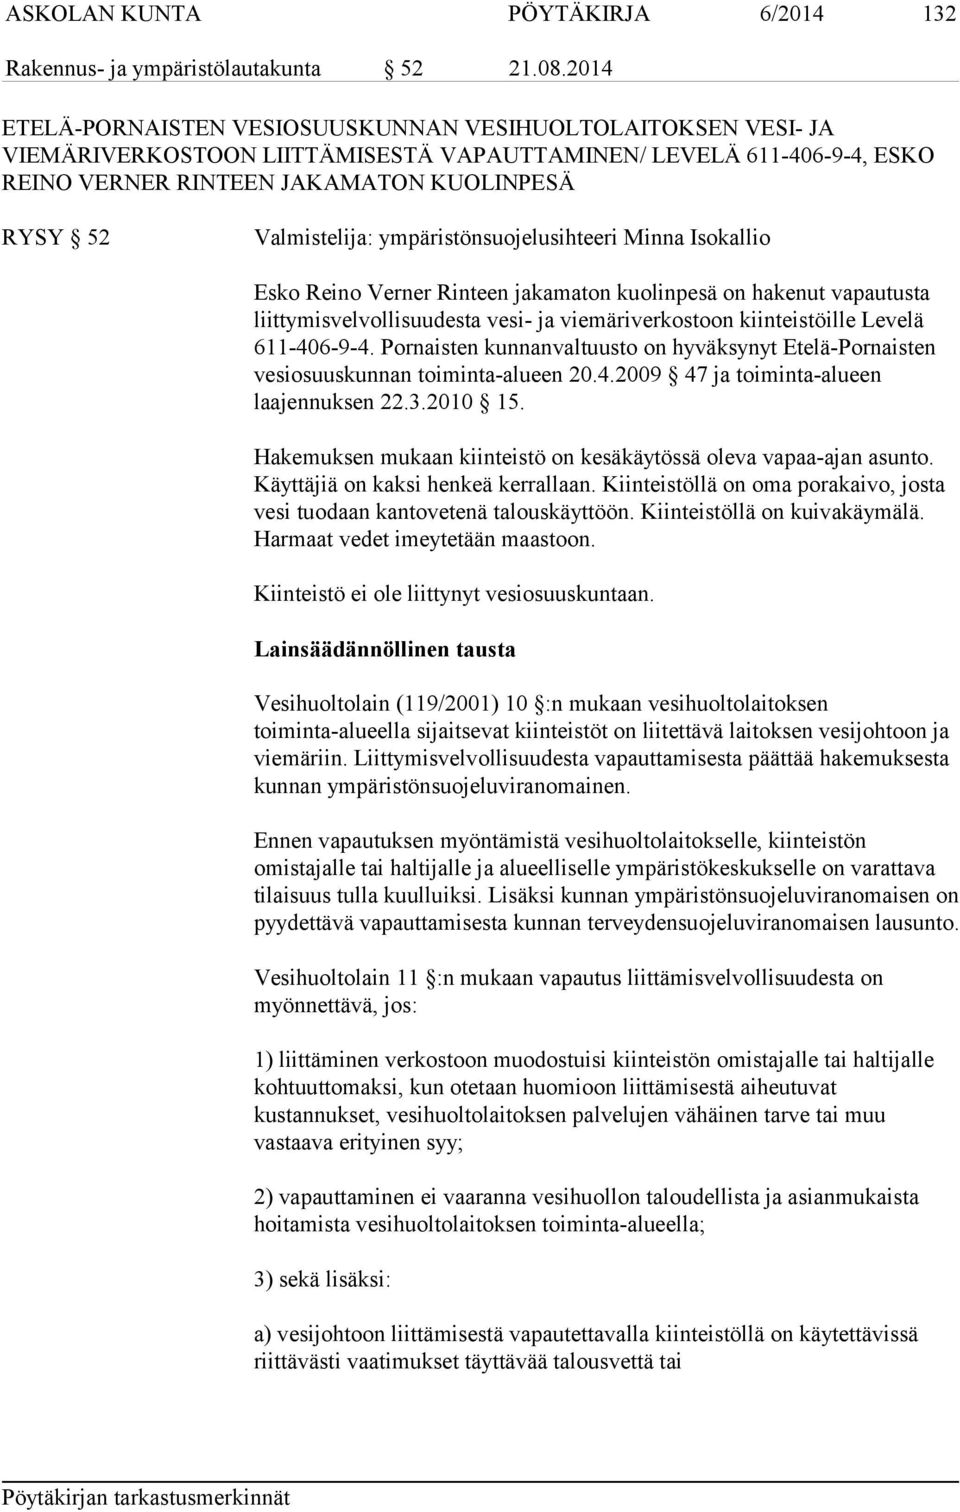 Valmistelija: ympäristönsuojelusihteeri Minna Isokallio Esko Reino Verner Rinteen jakamaton kuolinpesä on hakenut vapautusta liittymisvelvollisuudesta vesi- ja viemäriverkostoon kiinteistöille Levelä